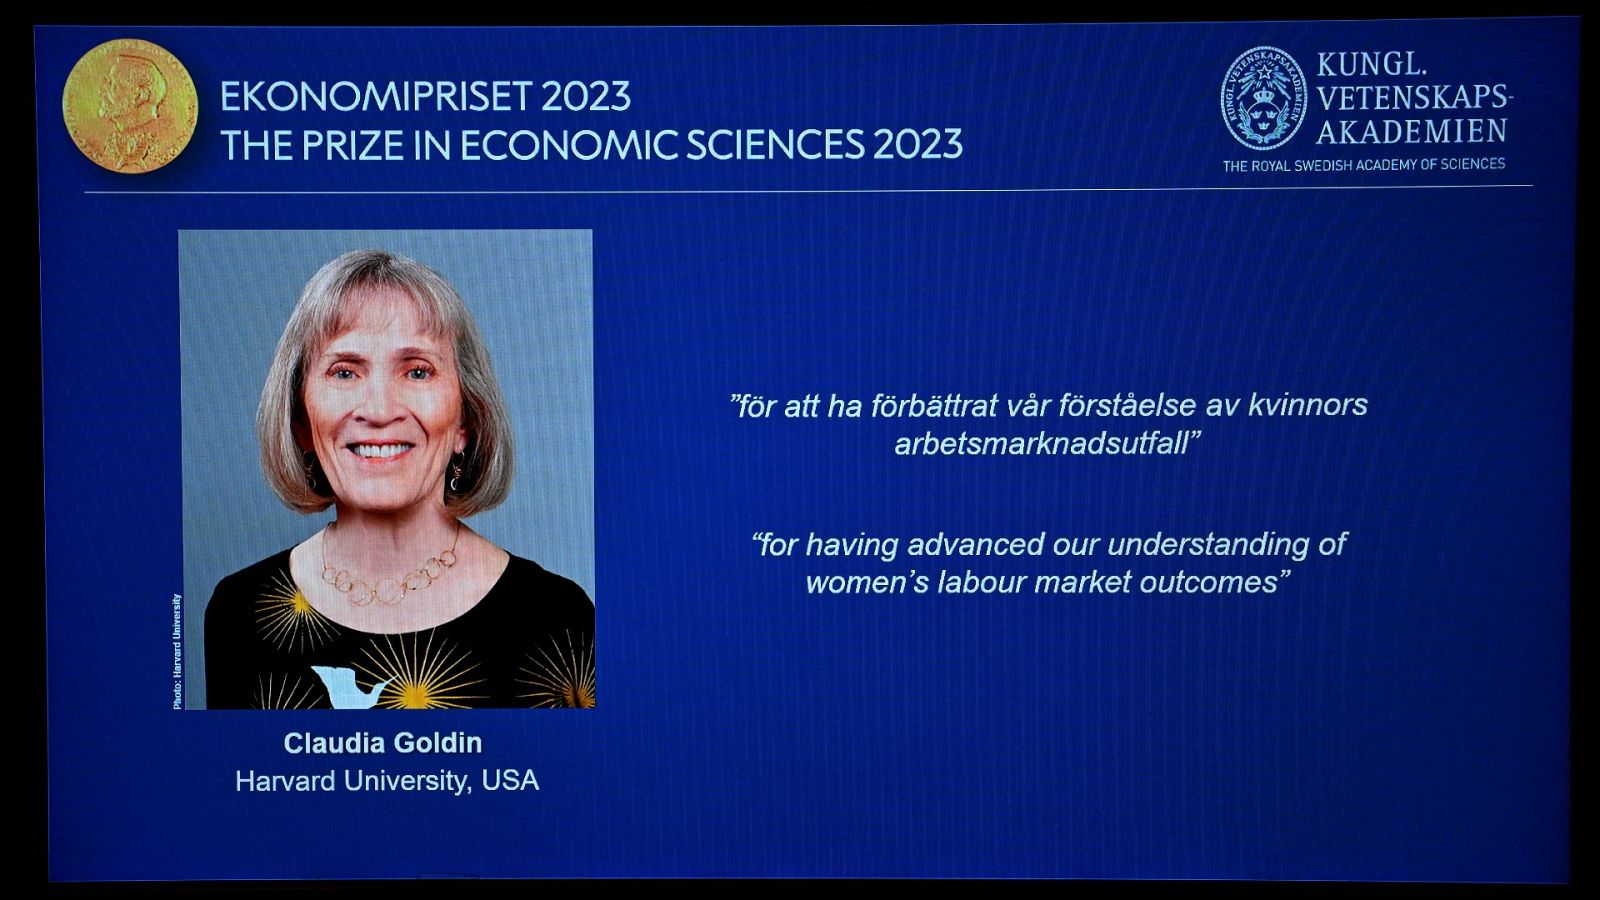 La estadounidense Claudia Goldin gana el premio Nobel de Economía 2023 por sus estudios sobre la brecha de género y el papel de las mujeres en el mercado laboral.